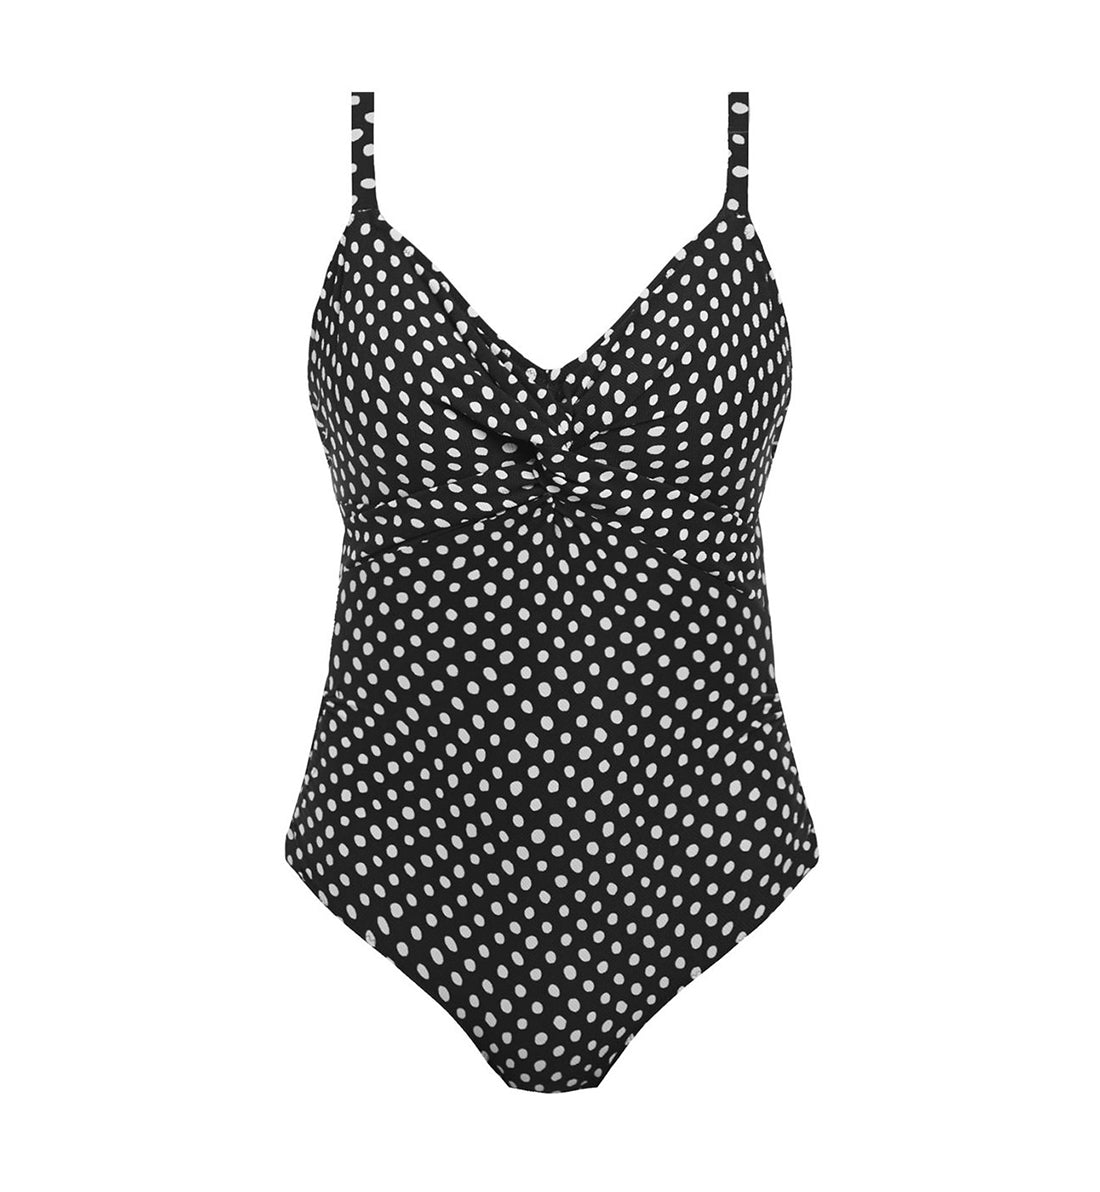 Fantasie Santa Monica Twist Front Underwire Swimsuit (6728),32E,Black/White - Black/White,32E